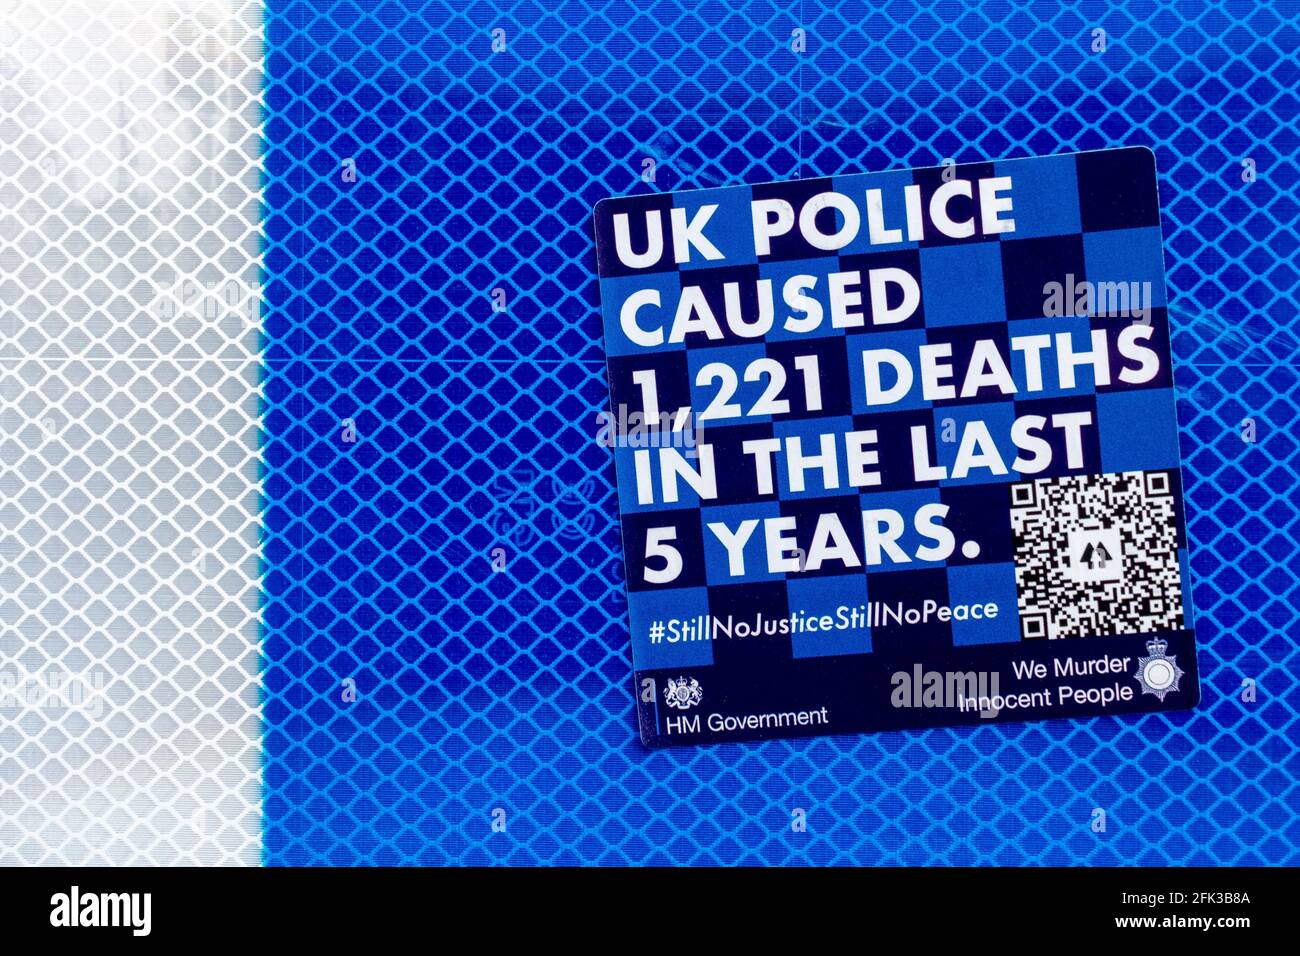 Una pegatina azul contra la policía que afirma que la policía del Reino Unido ha causado 1221 muertes en los últimos cinco años. Foto de stock